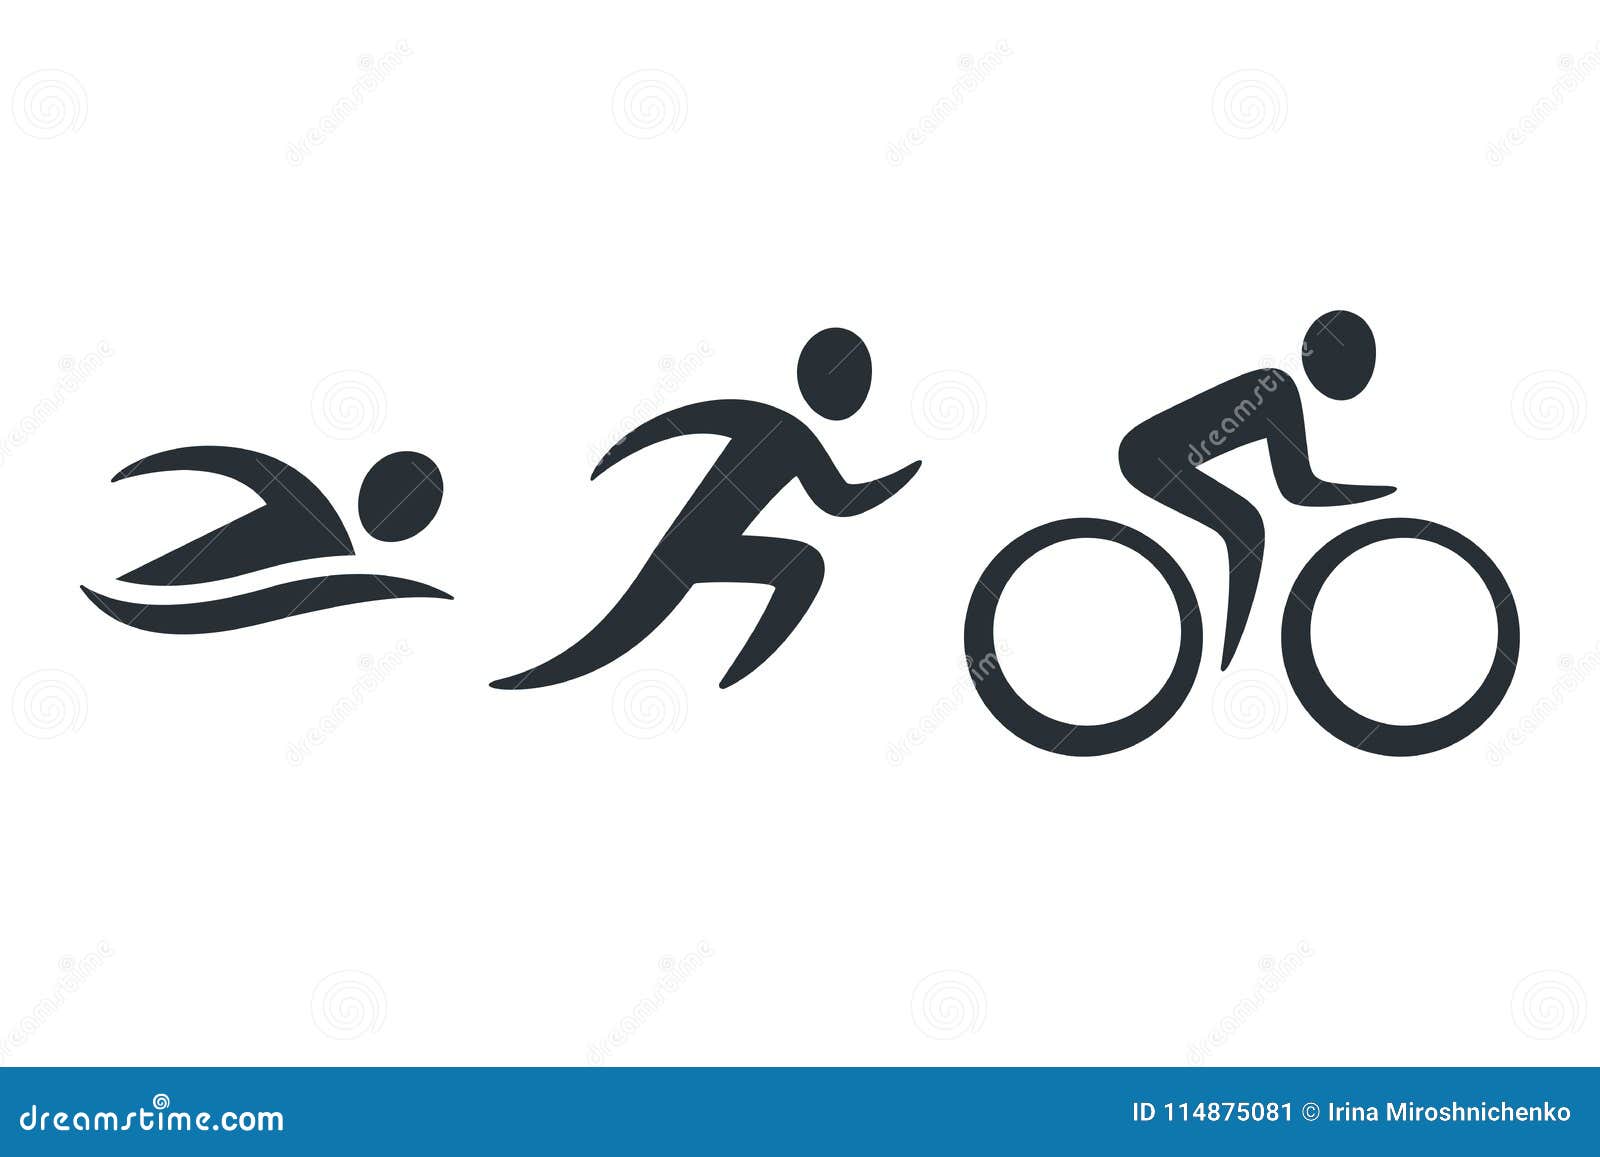 triathlon activity icons